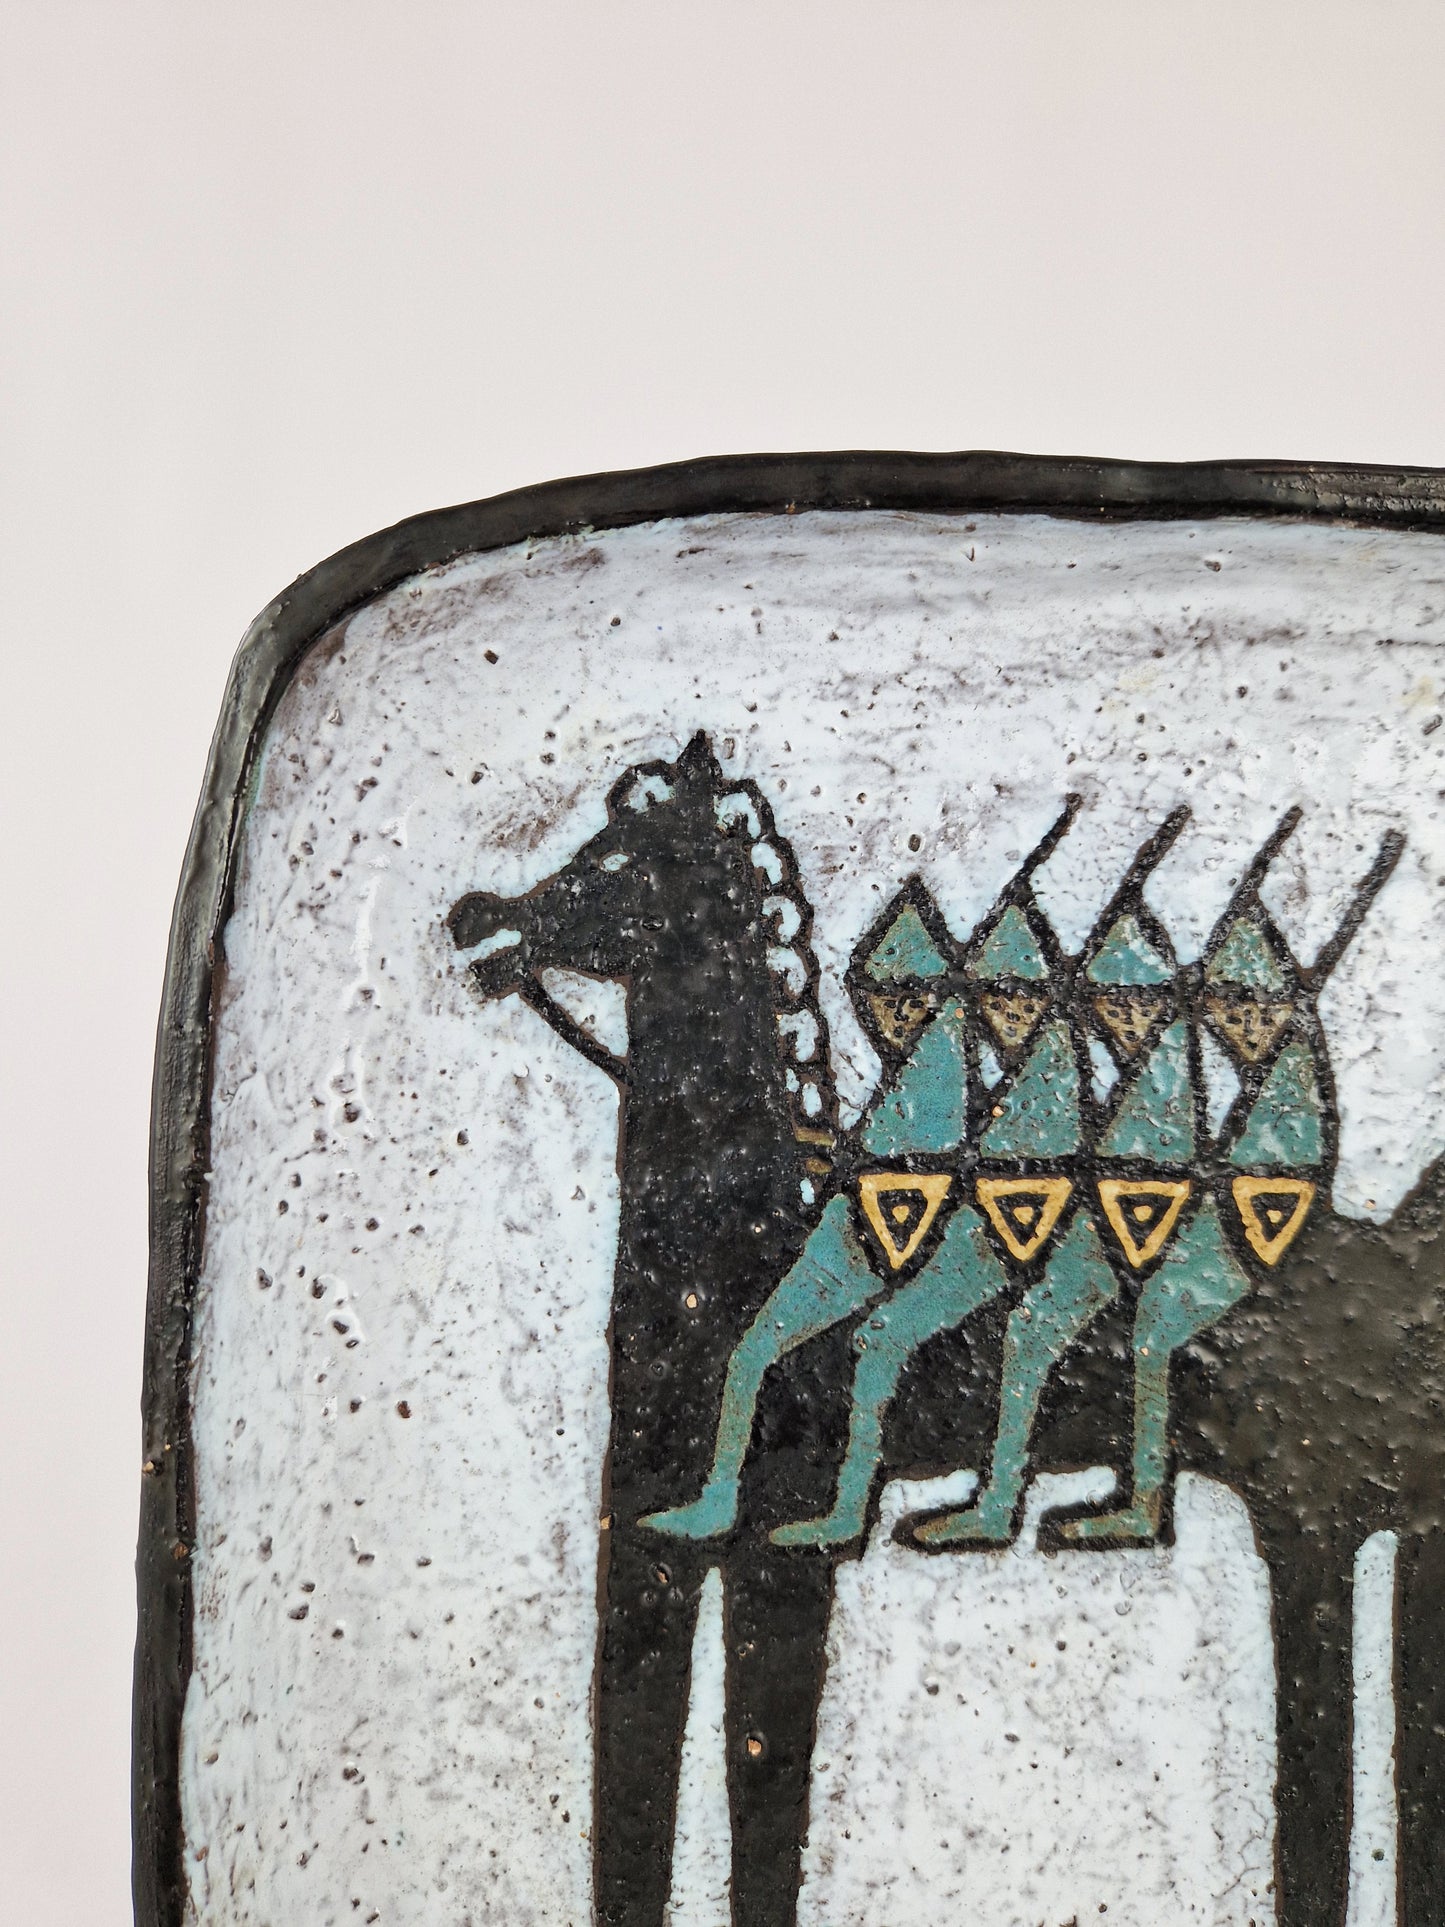 Odette Dijeux - Plat carré en céramique, décor au cheval Bayard